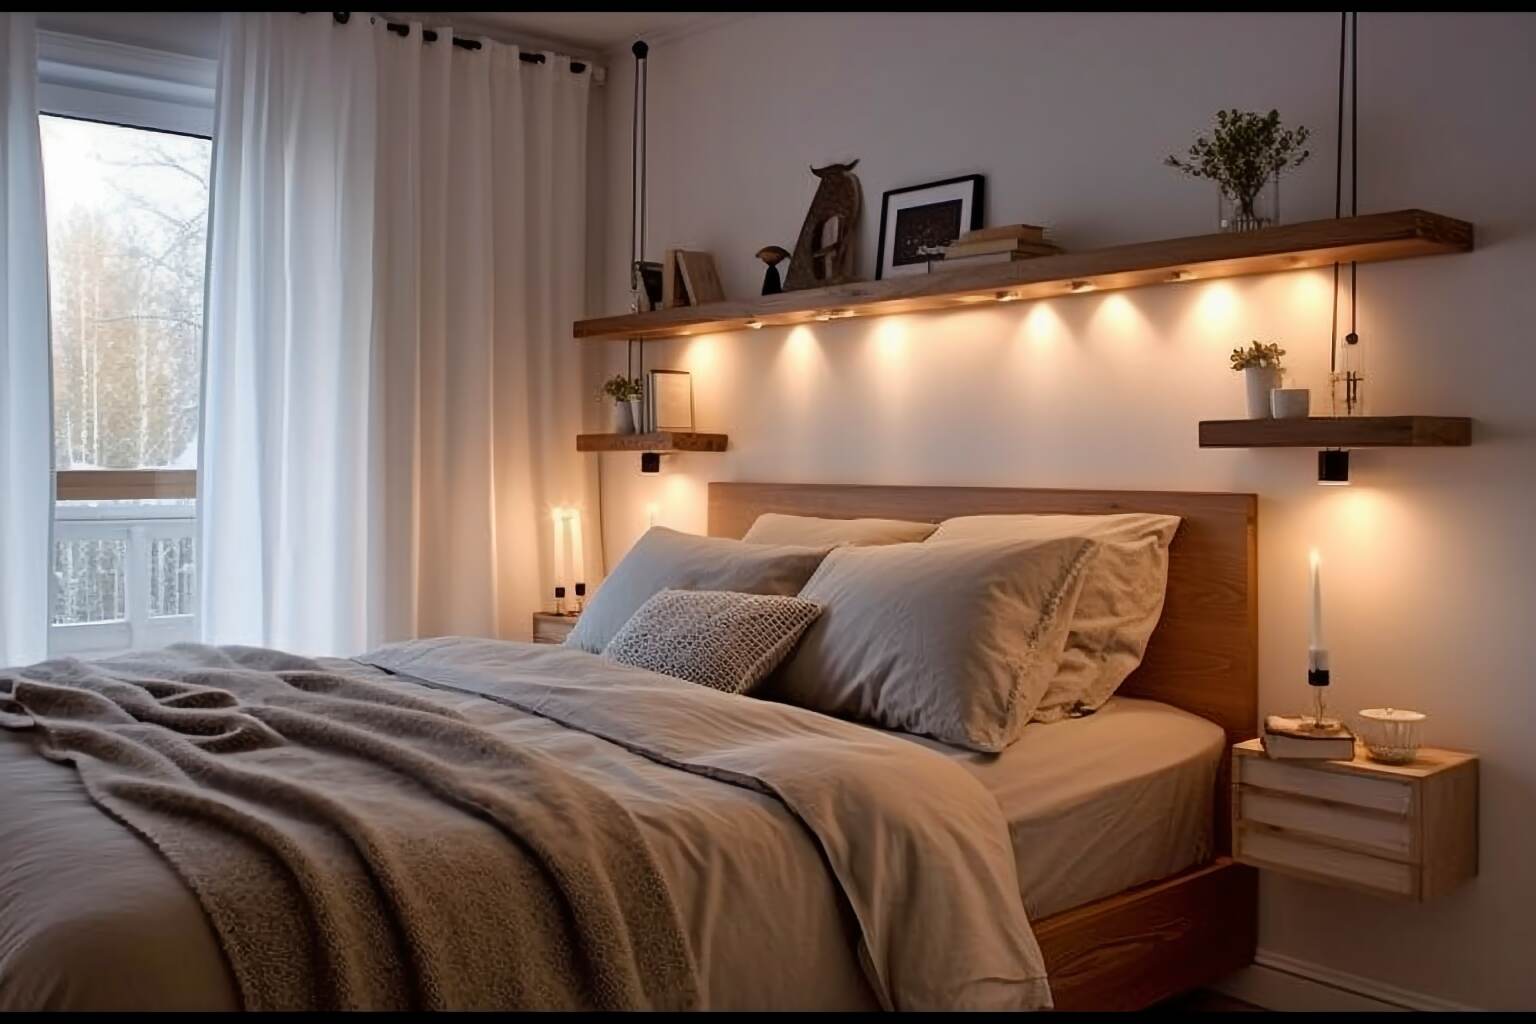 Scandinavian Bedroom With A Focus On Lighting